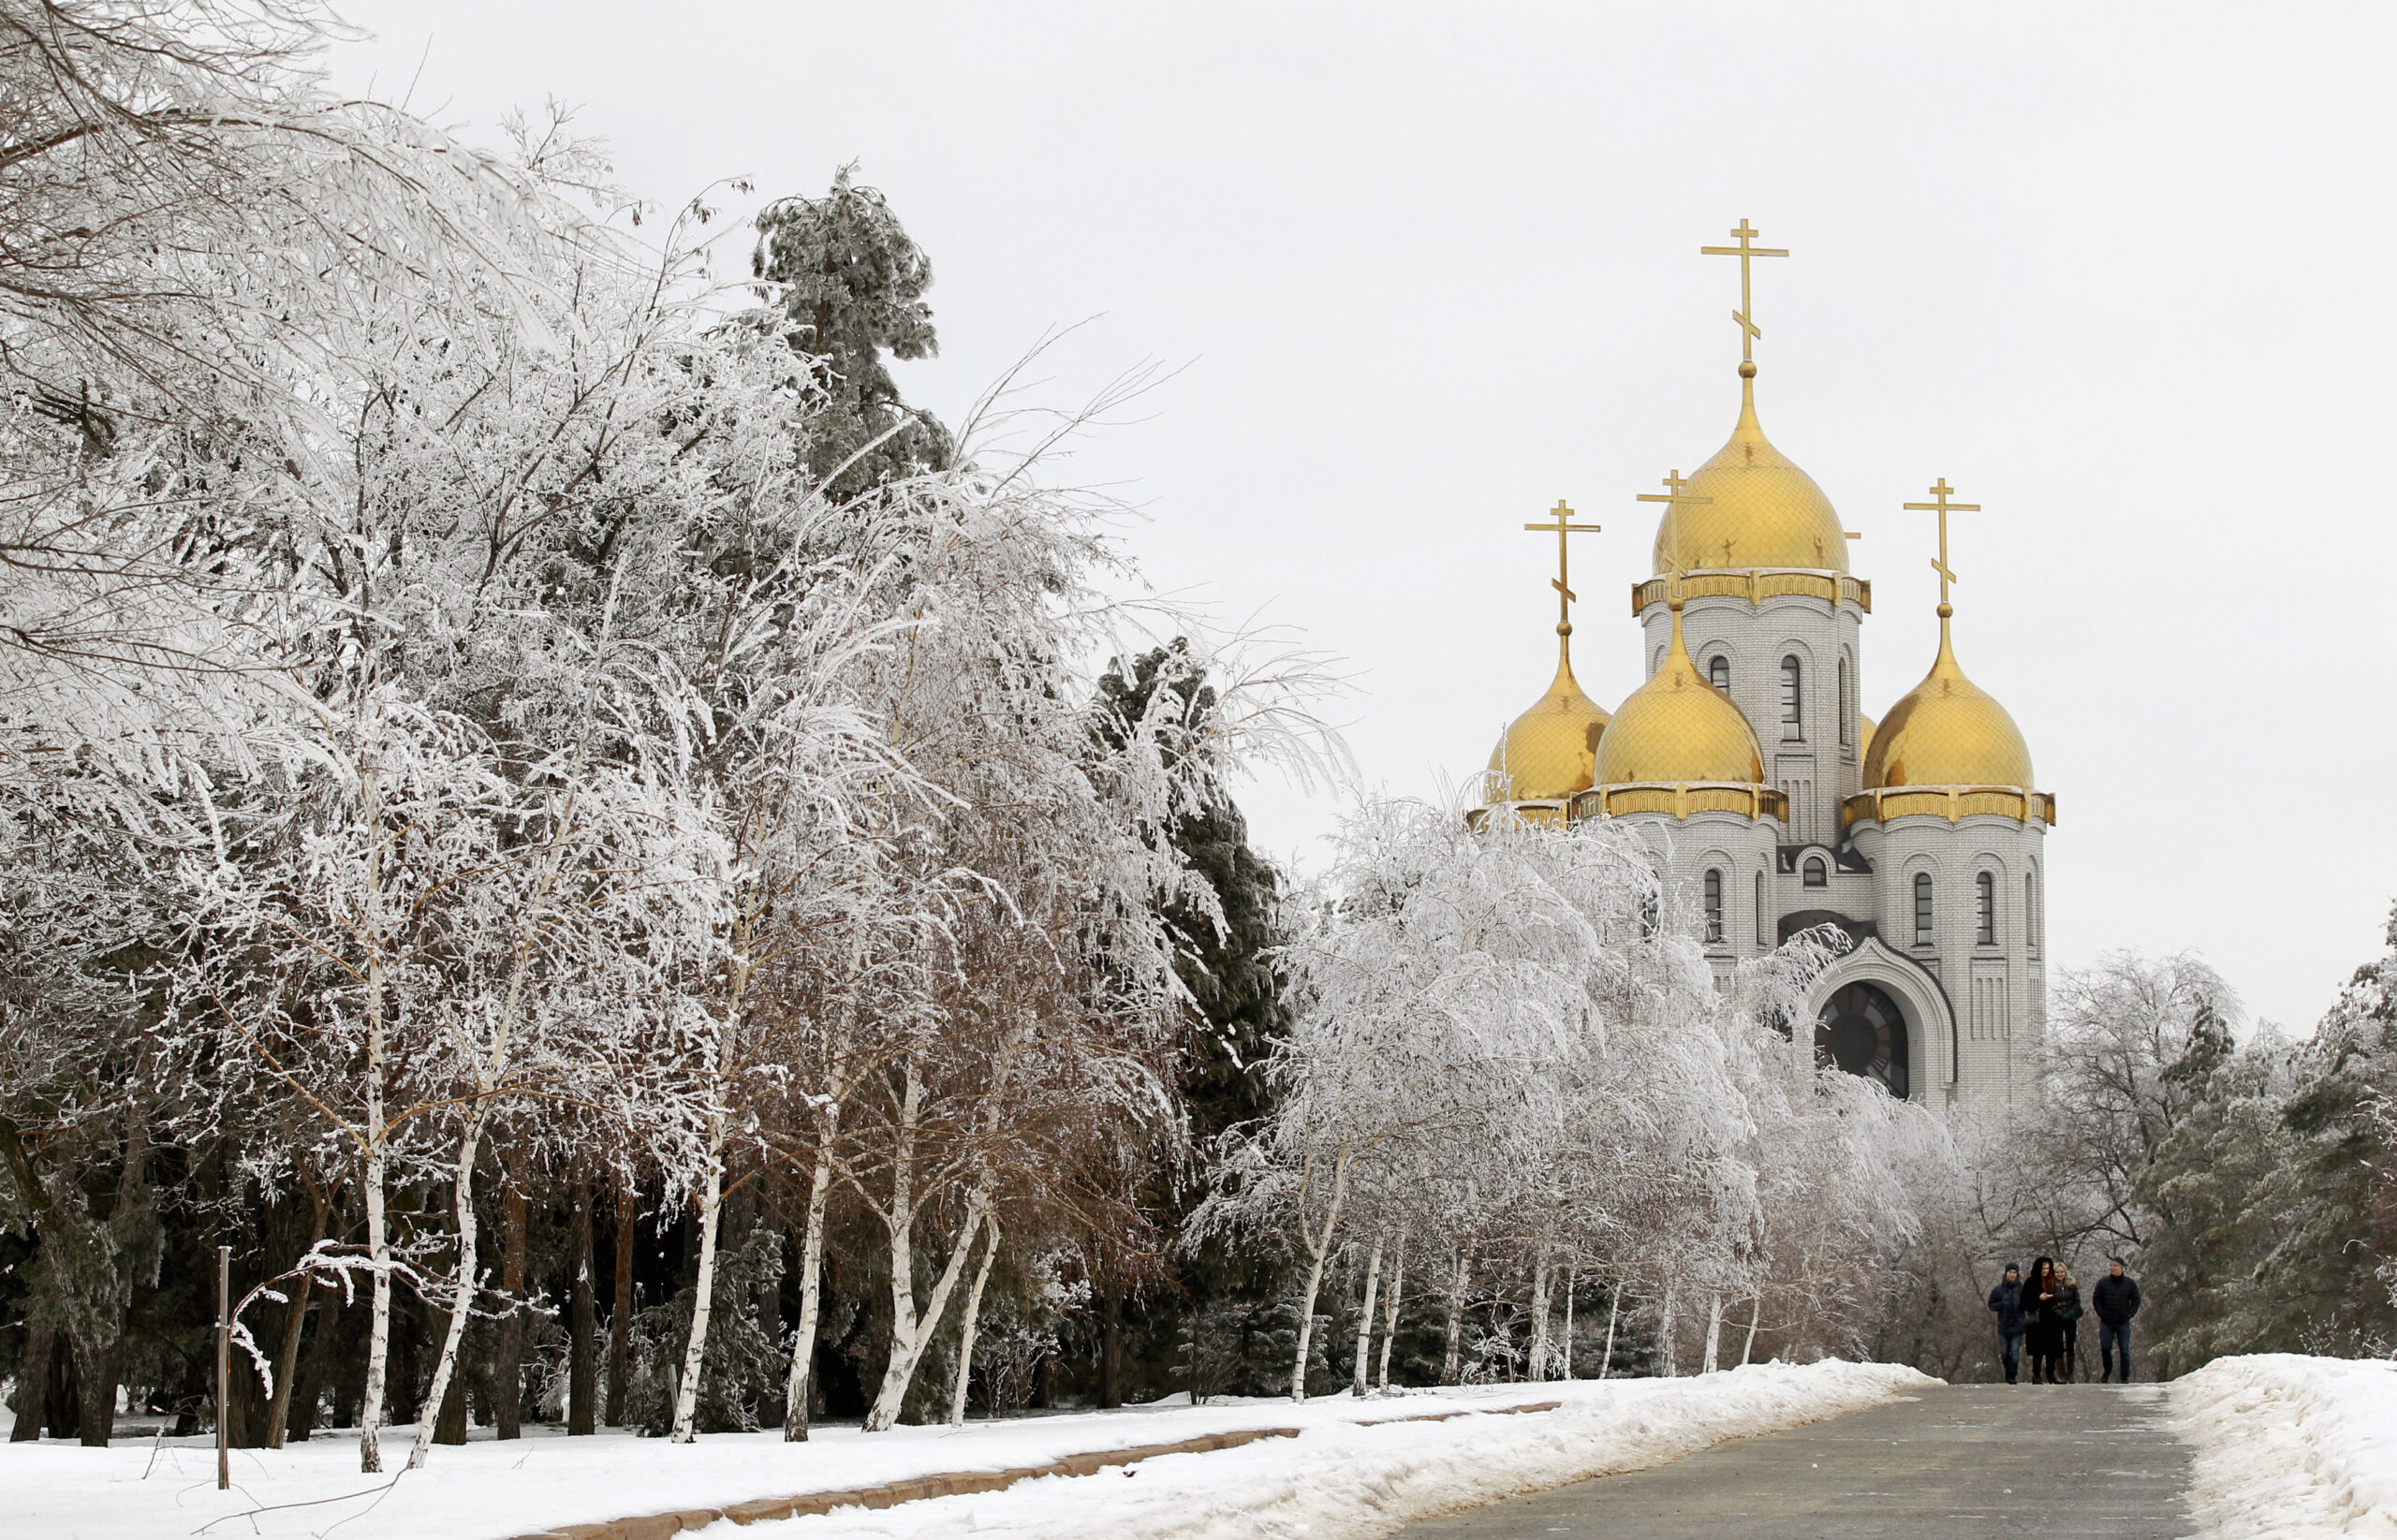 Des touristes visitent une église orthodoxe à Volgograd, en Russie. /Photo prise le 1er janvier 2014/REUTERS/Vasily Fedosenko